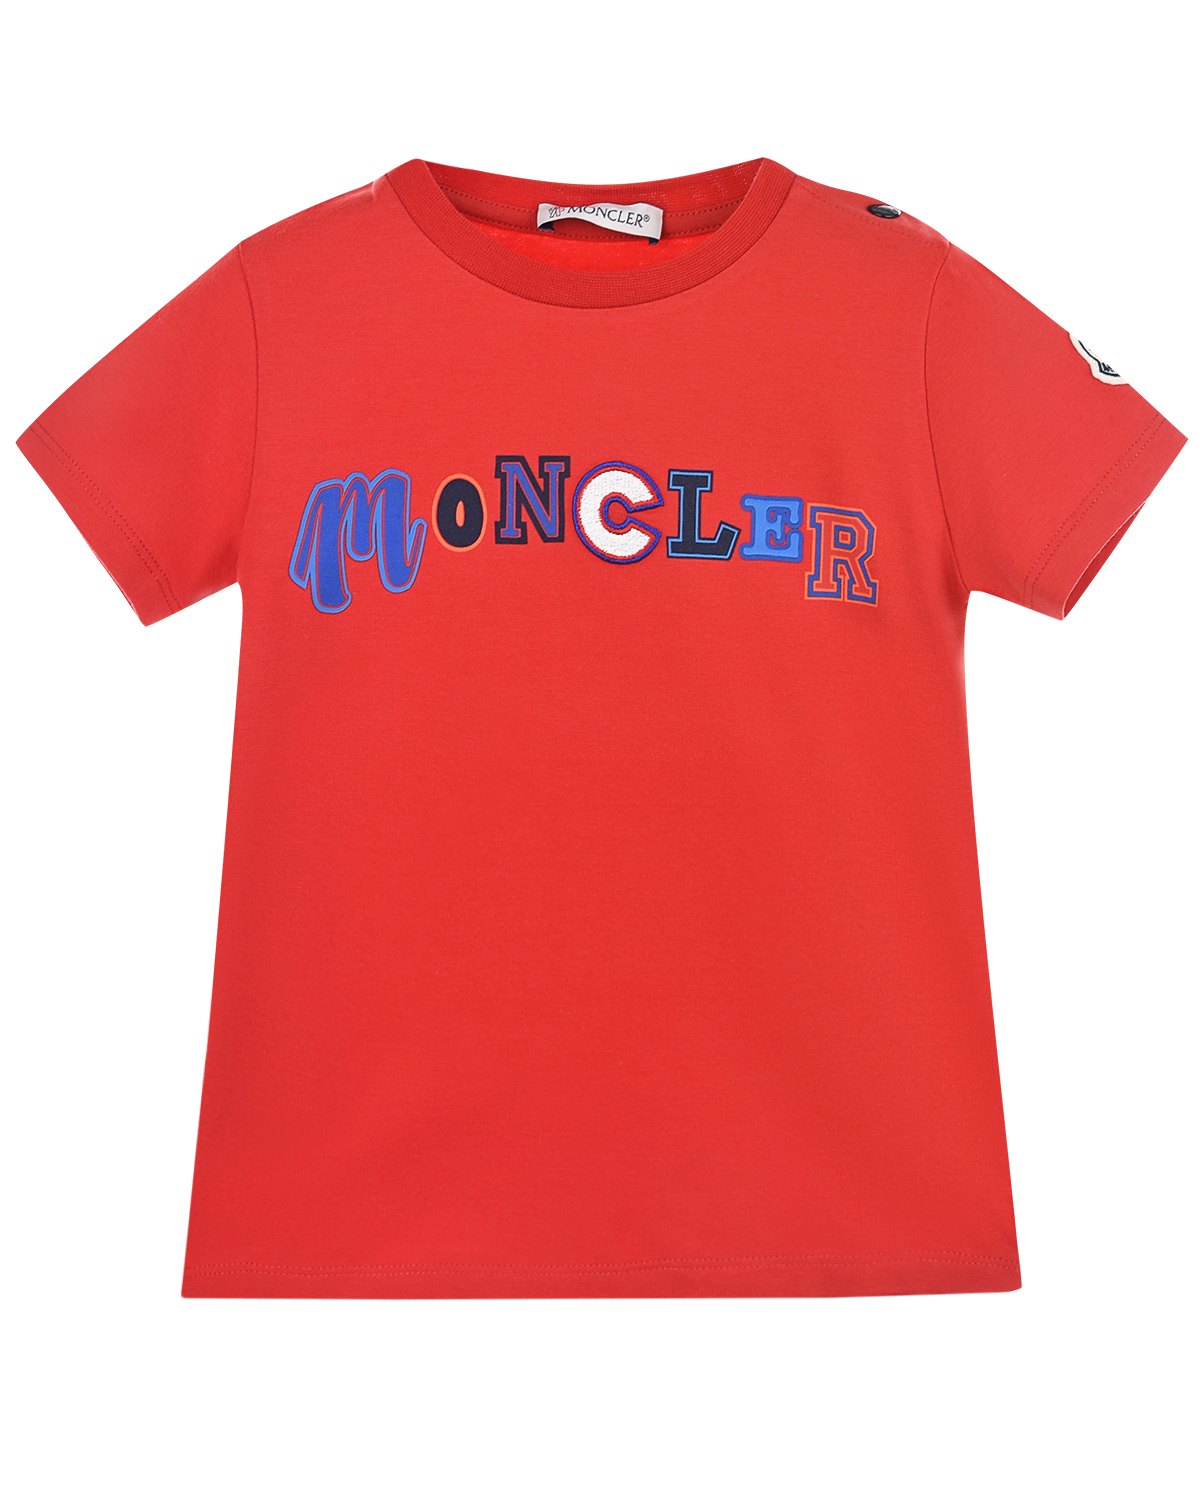 Где купить Футболка с логотипом Moncler детская Moncler 